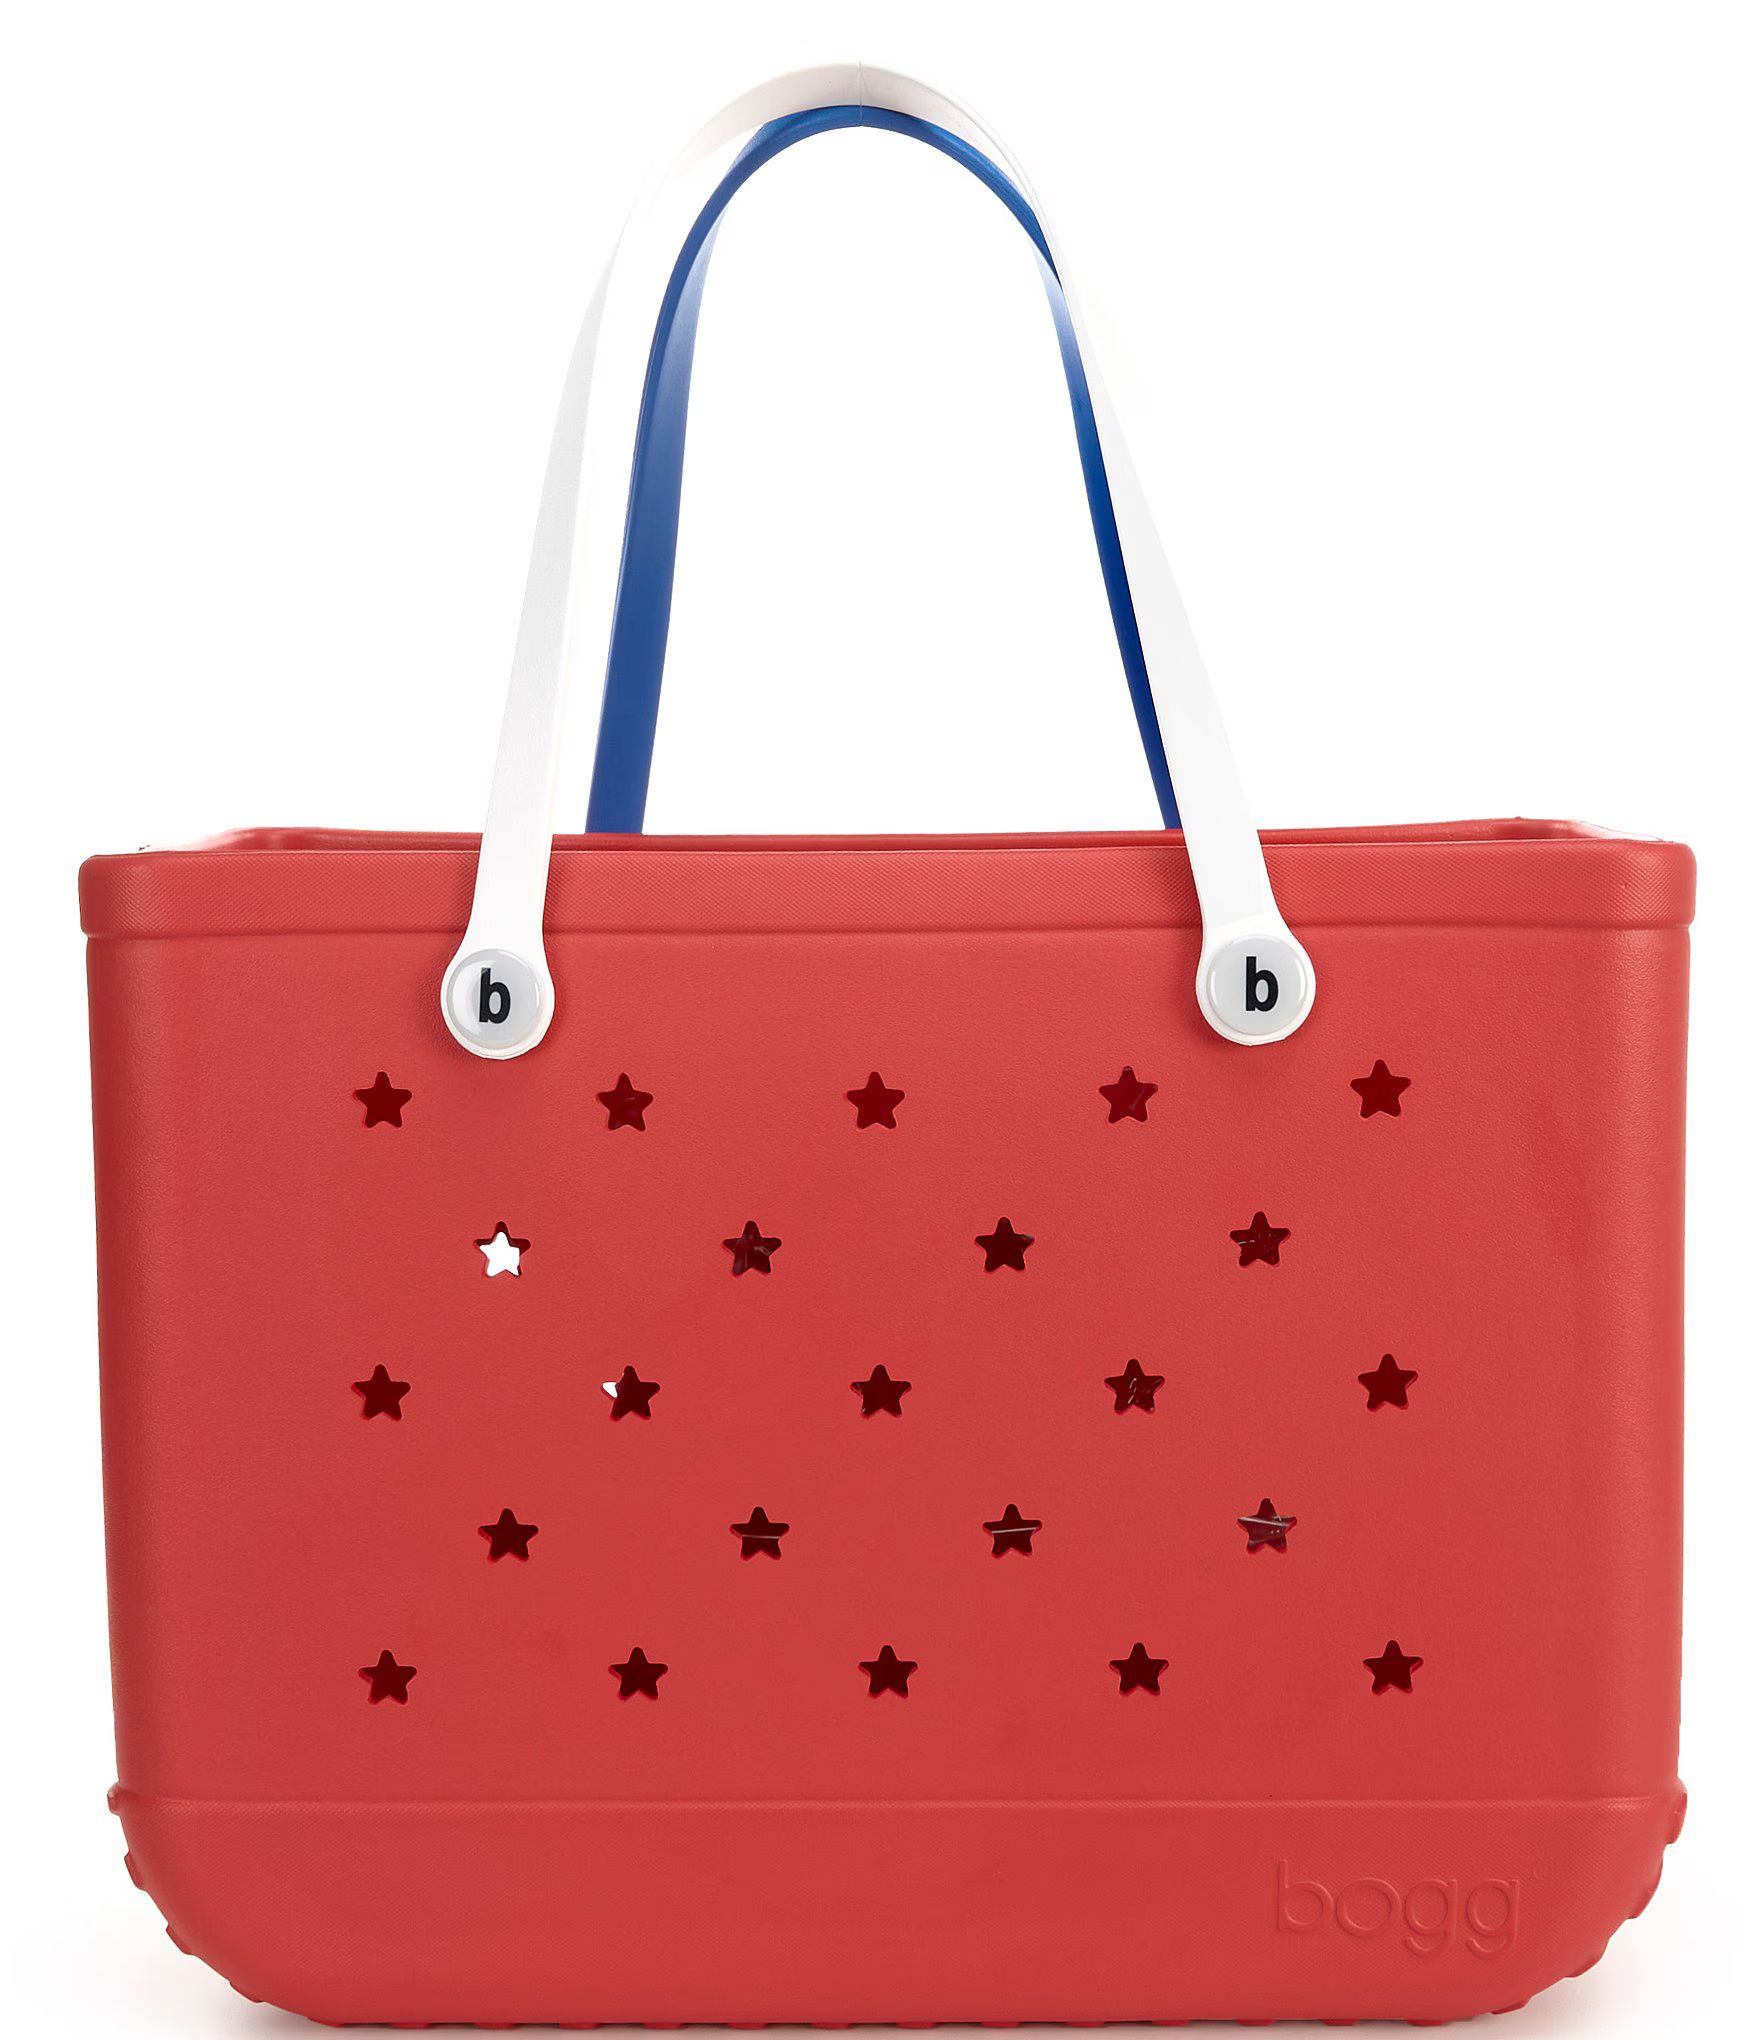 Bogg Bag Original Bogg Tote Bag | Dillard's | Dillard's